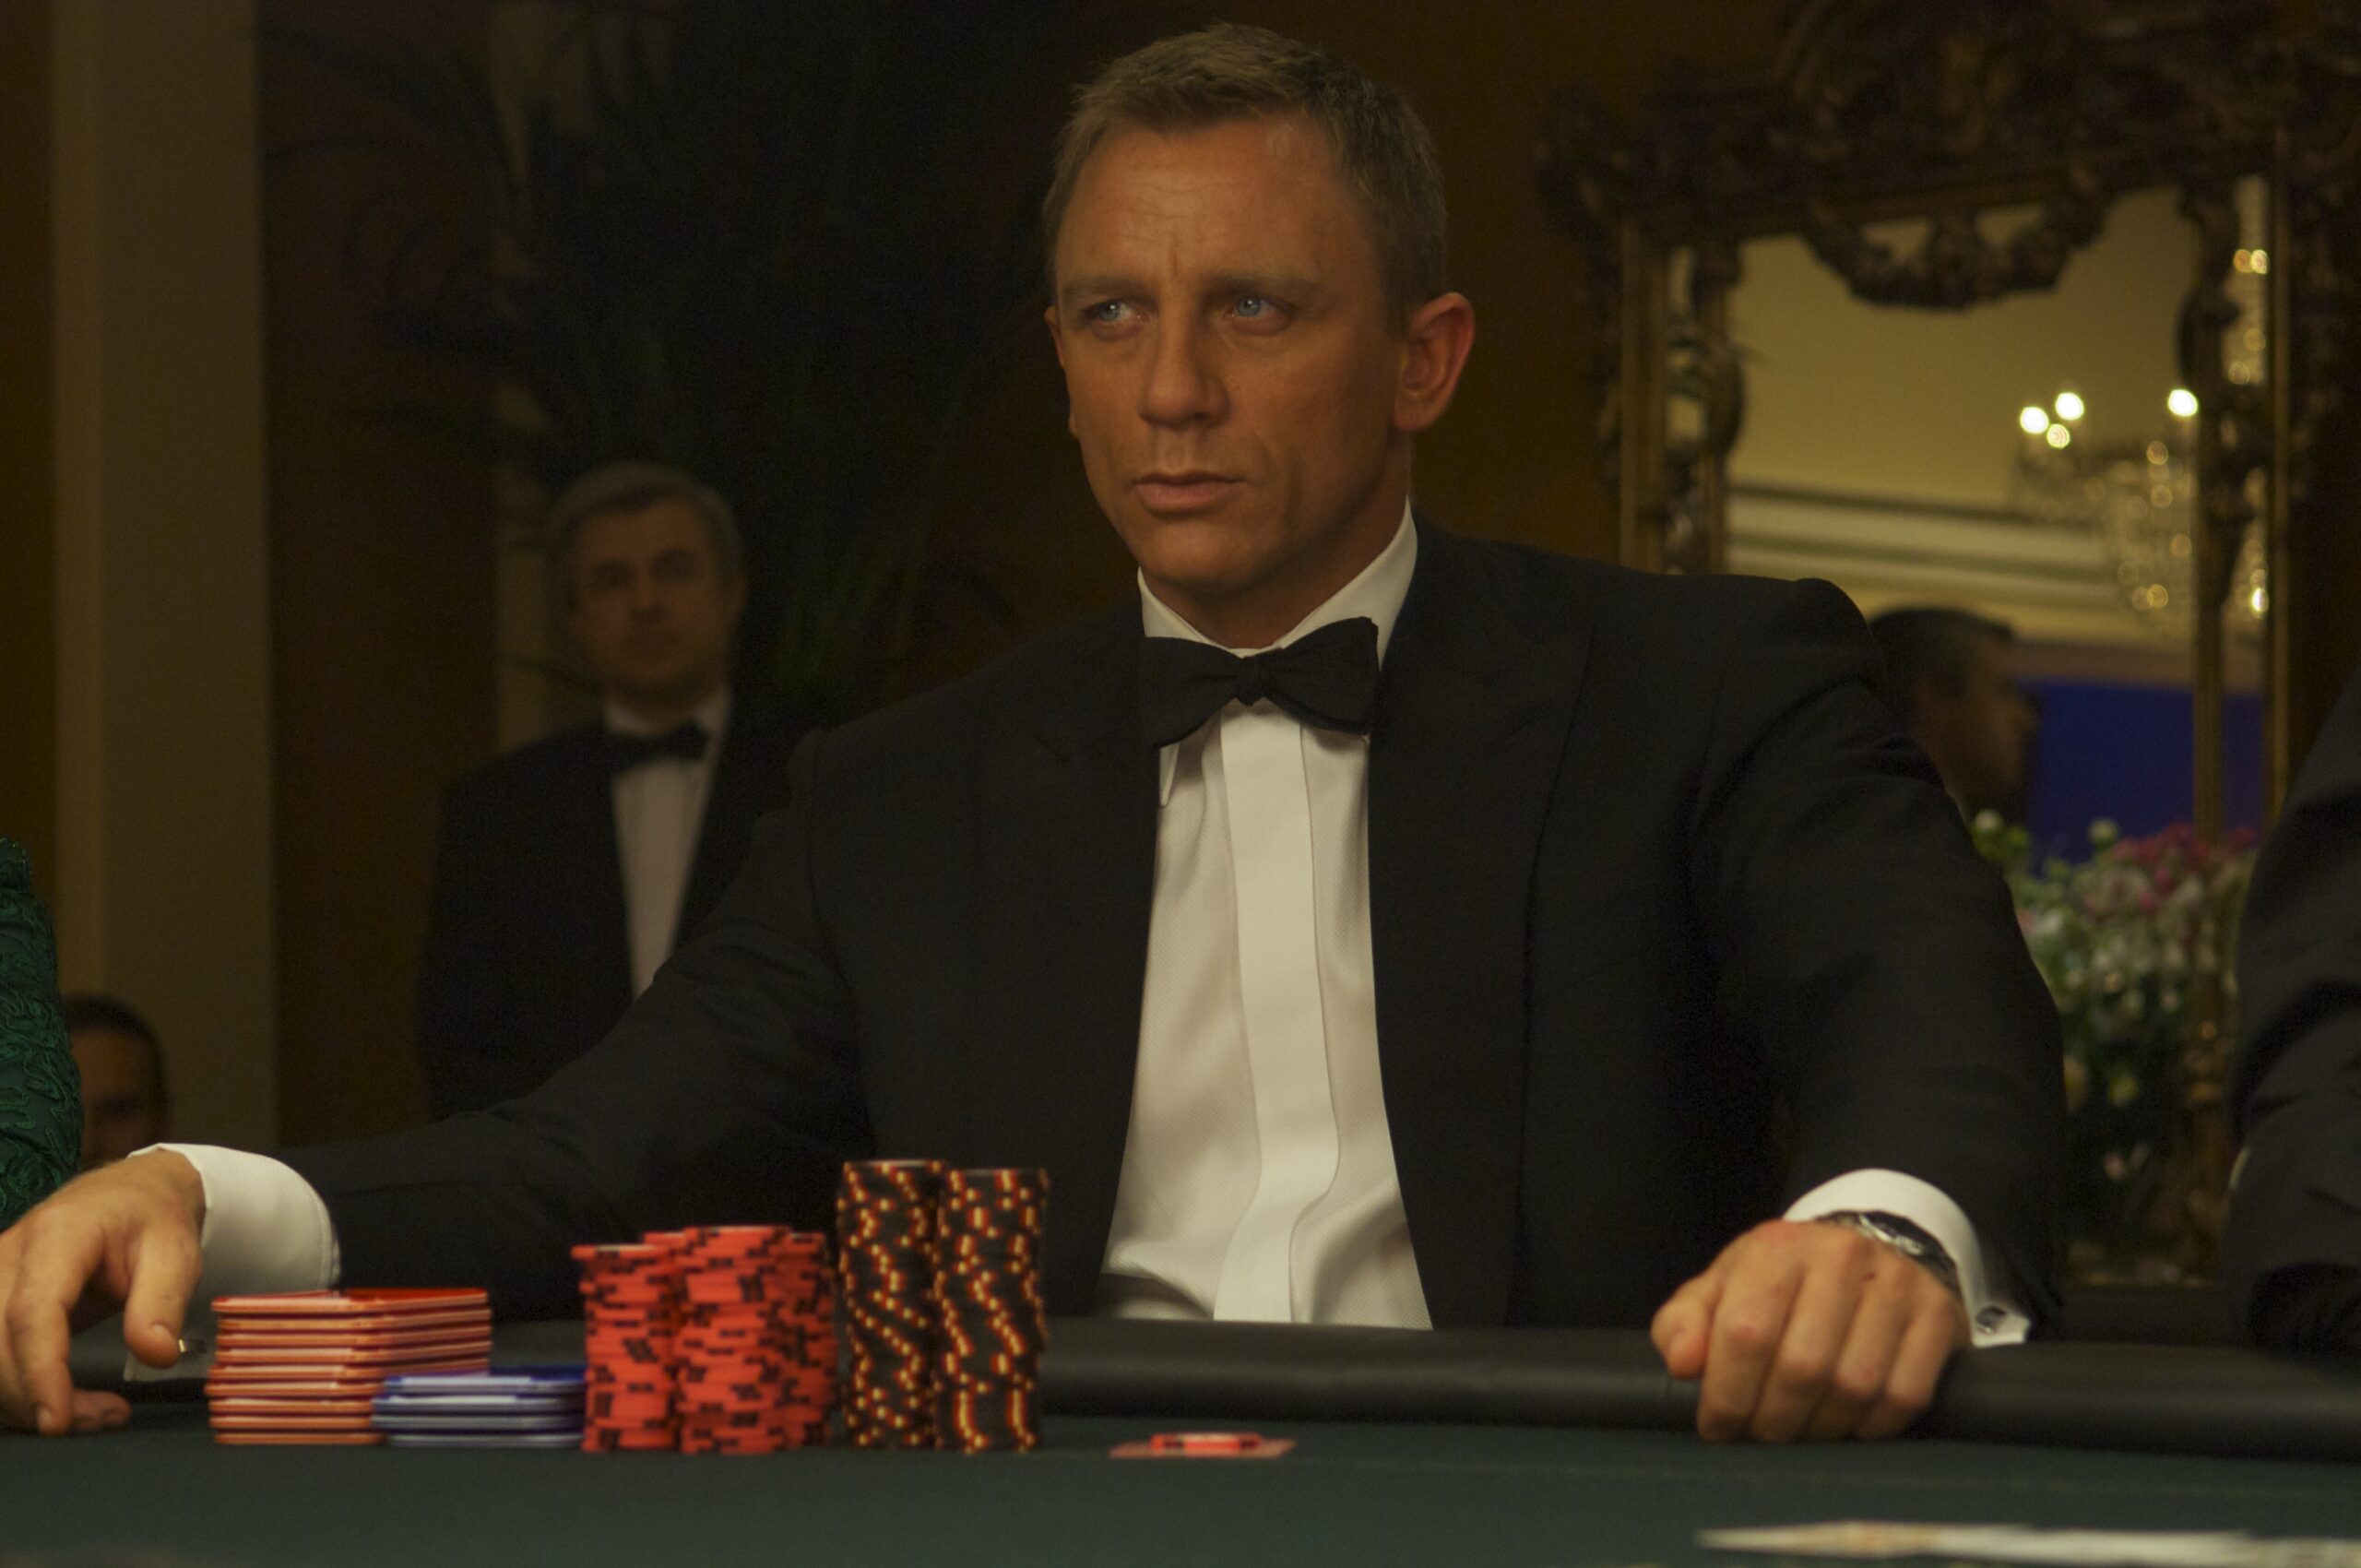 казино рояль 007 смотреть онлайн фильм в хорошем качестве 1080